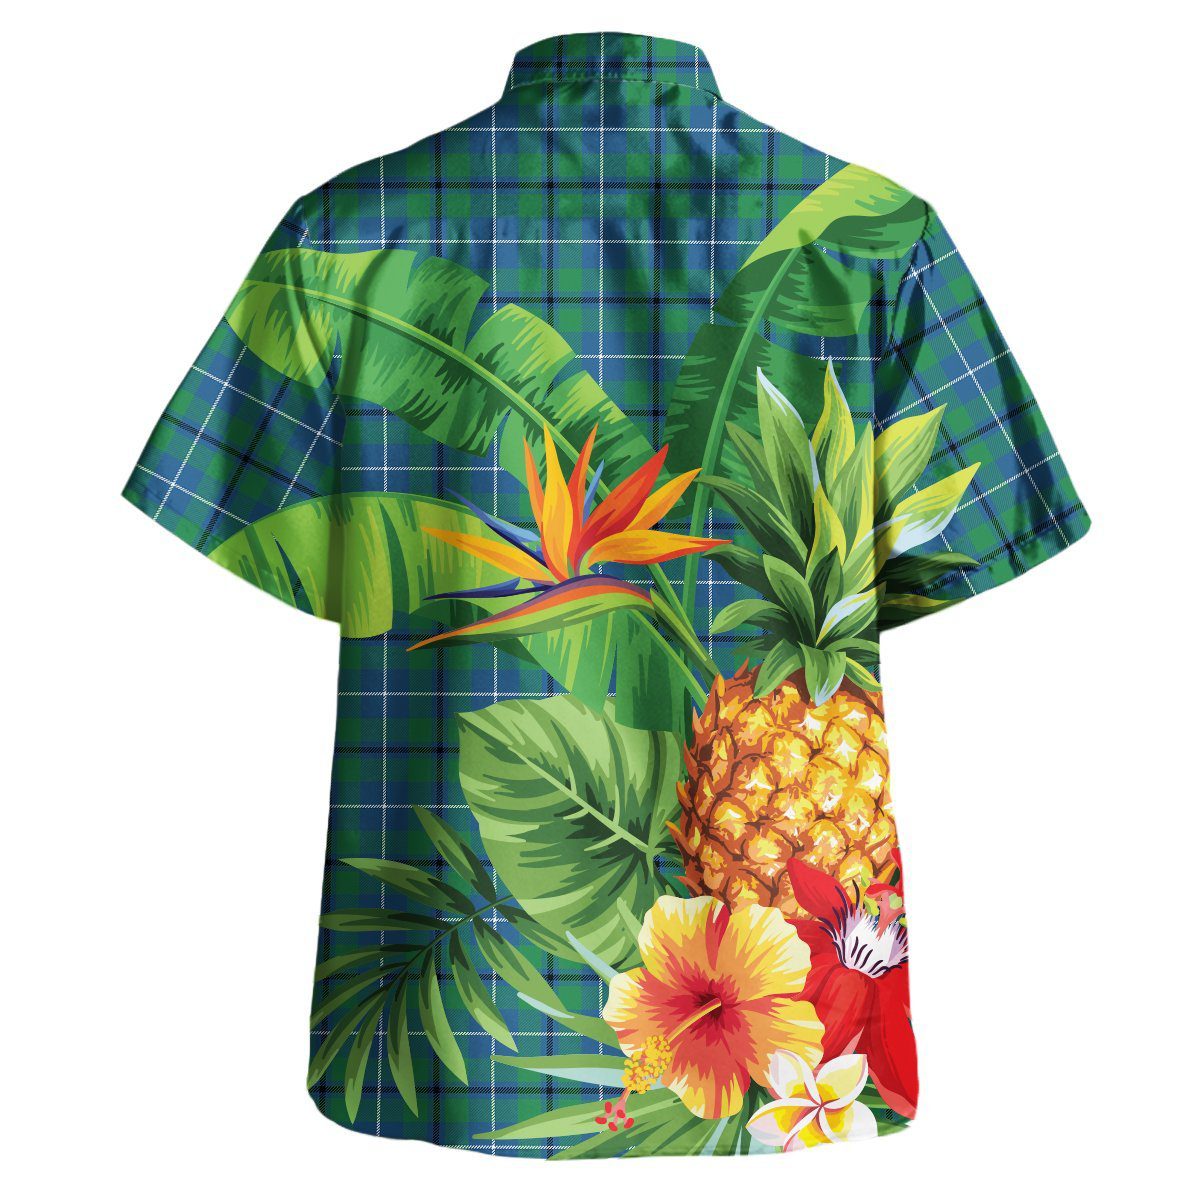 Douglas Ancient Tartan Aloha Shirt version 2